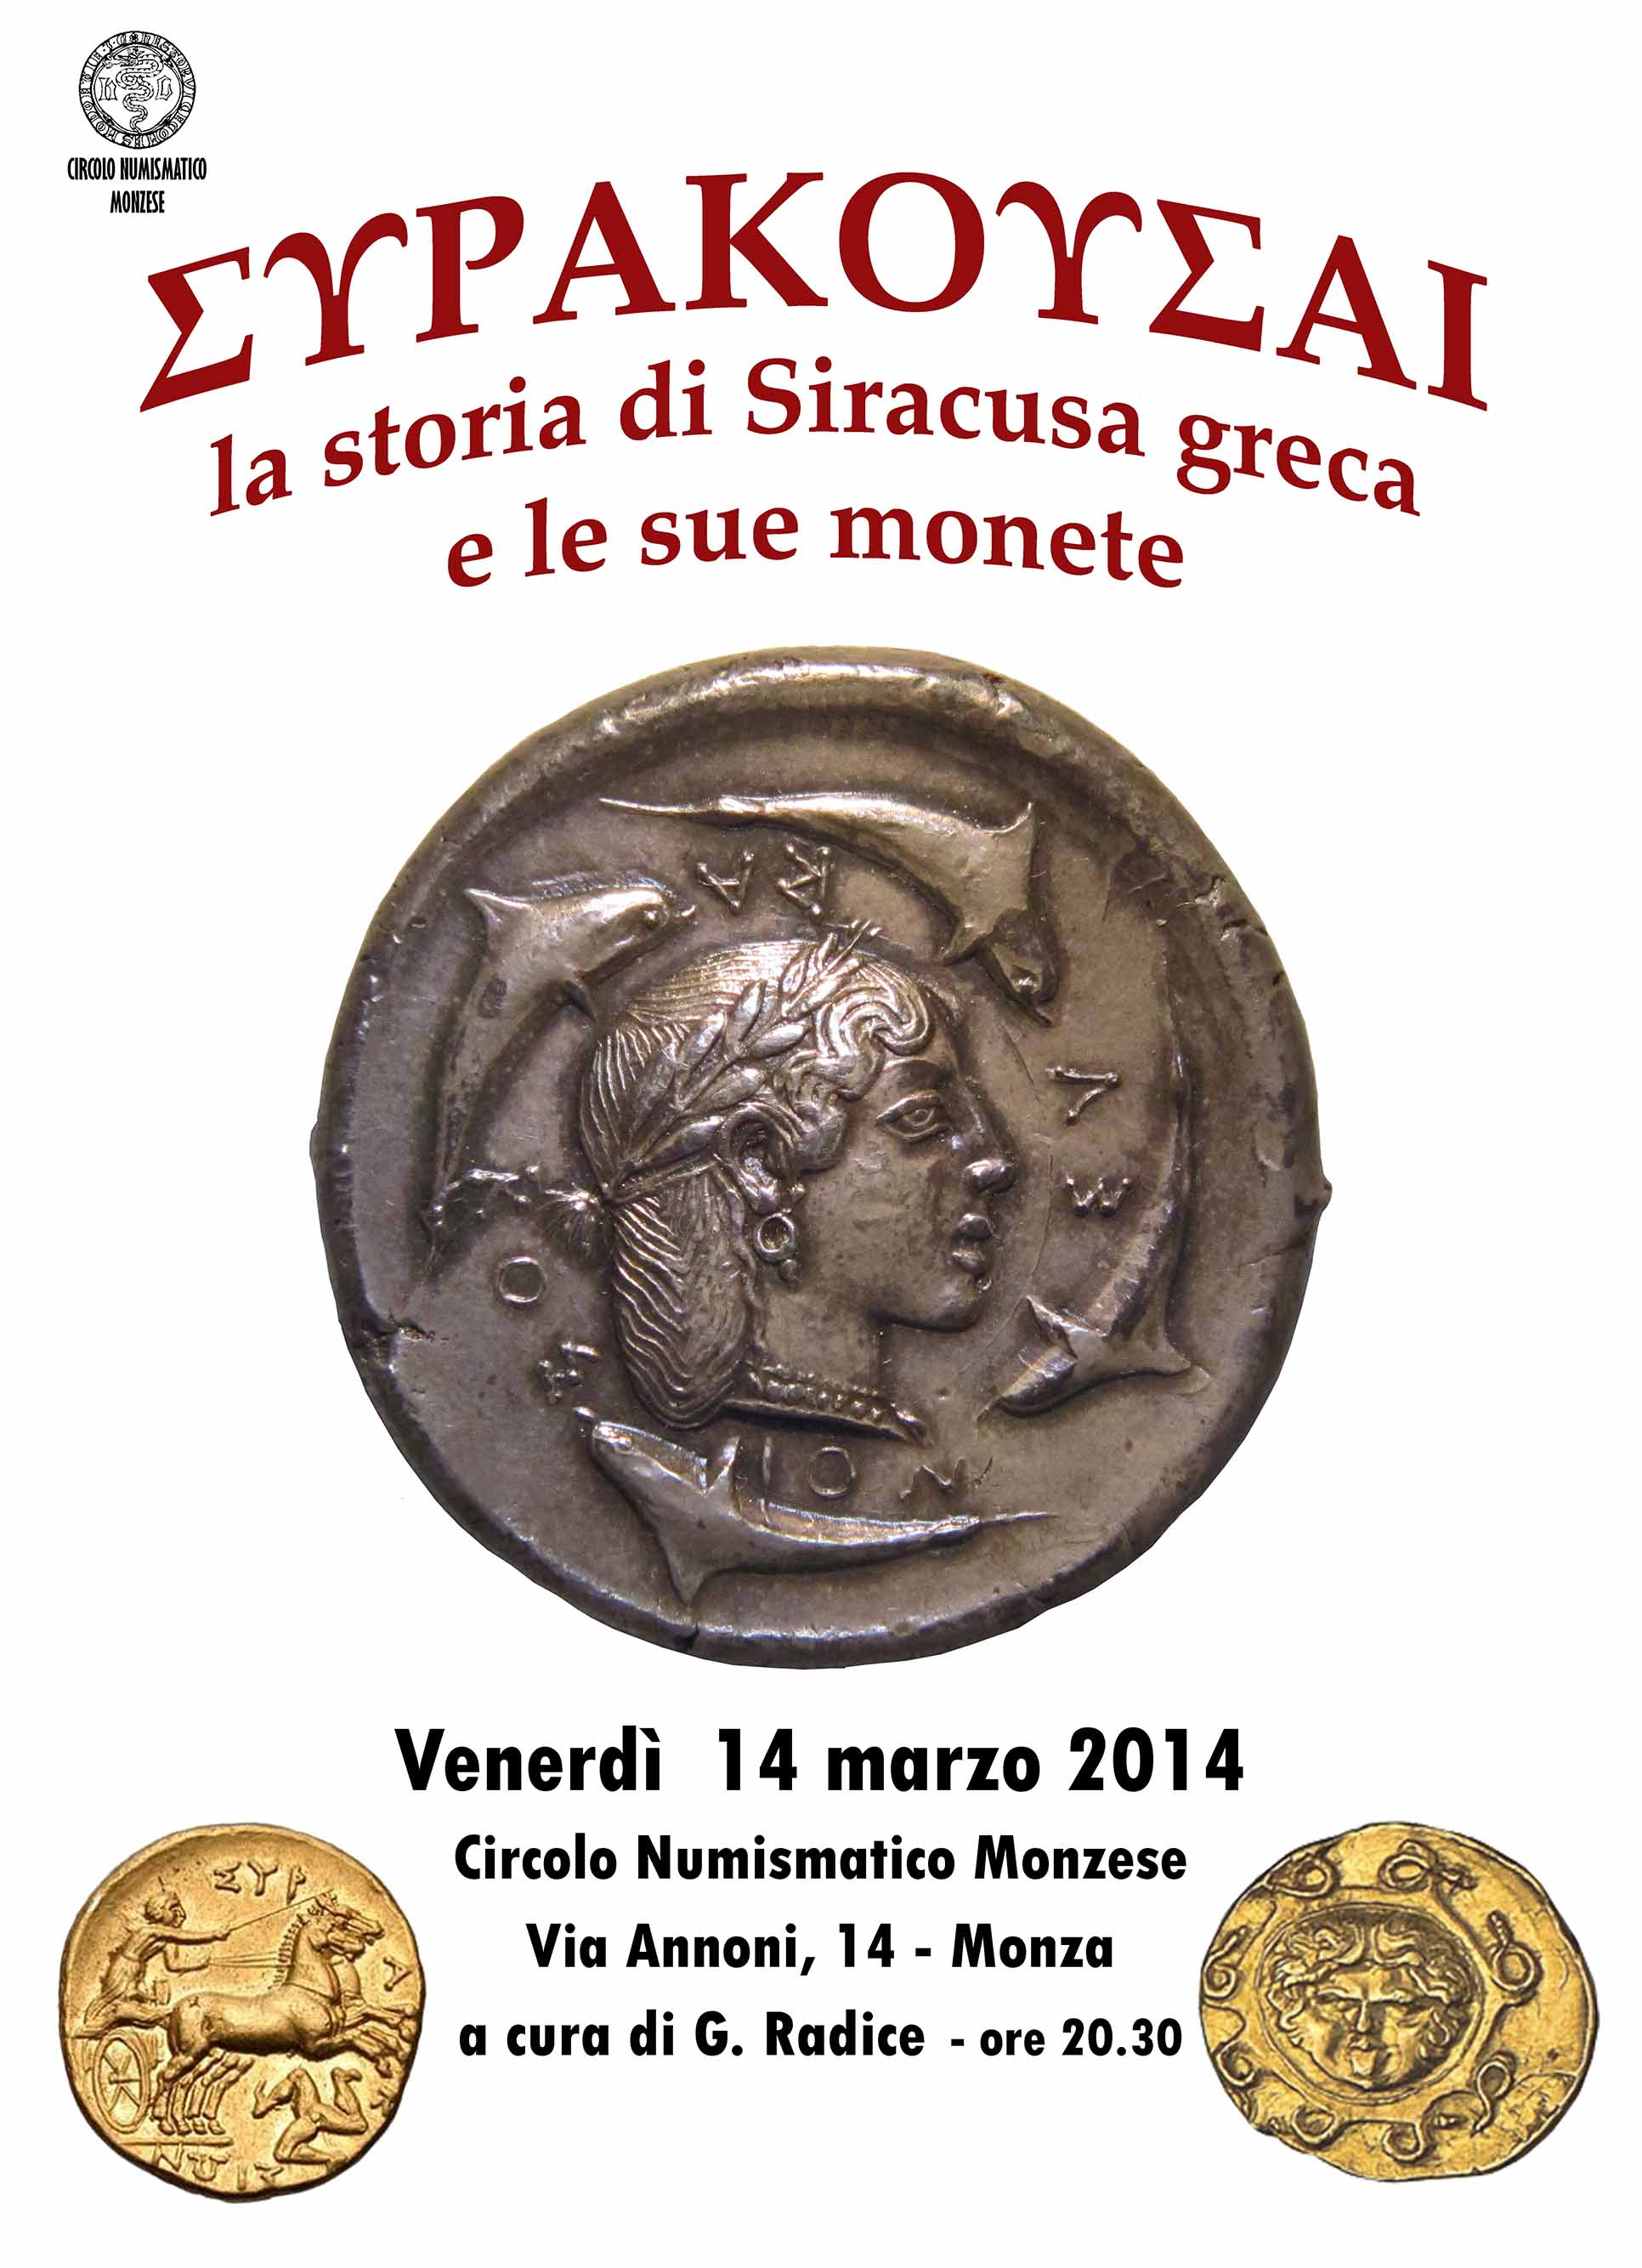 Circolo Numismatico Monzese » Siracusa greca - La storia e le 